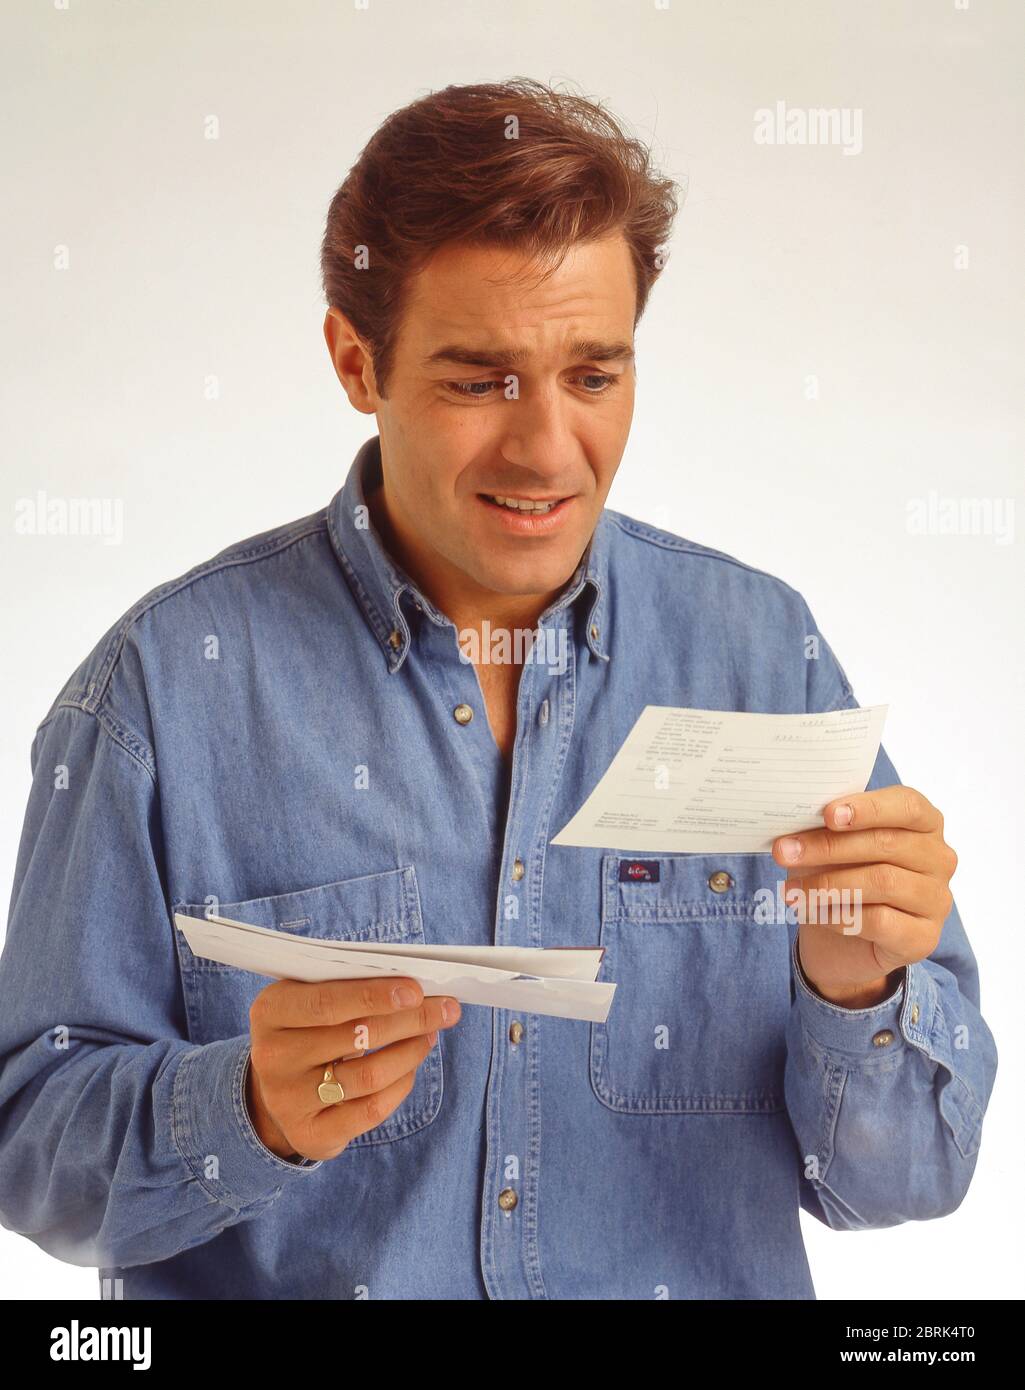 Jeune homme qui a l'air inquiet lorsqu'il reçoit une facture de ménage, Berkshire, Angleterre, Royaume-Uni Banque D'Images